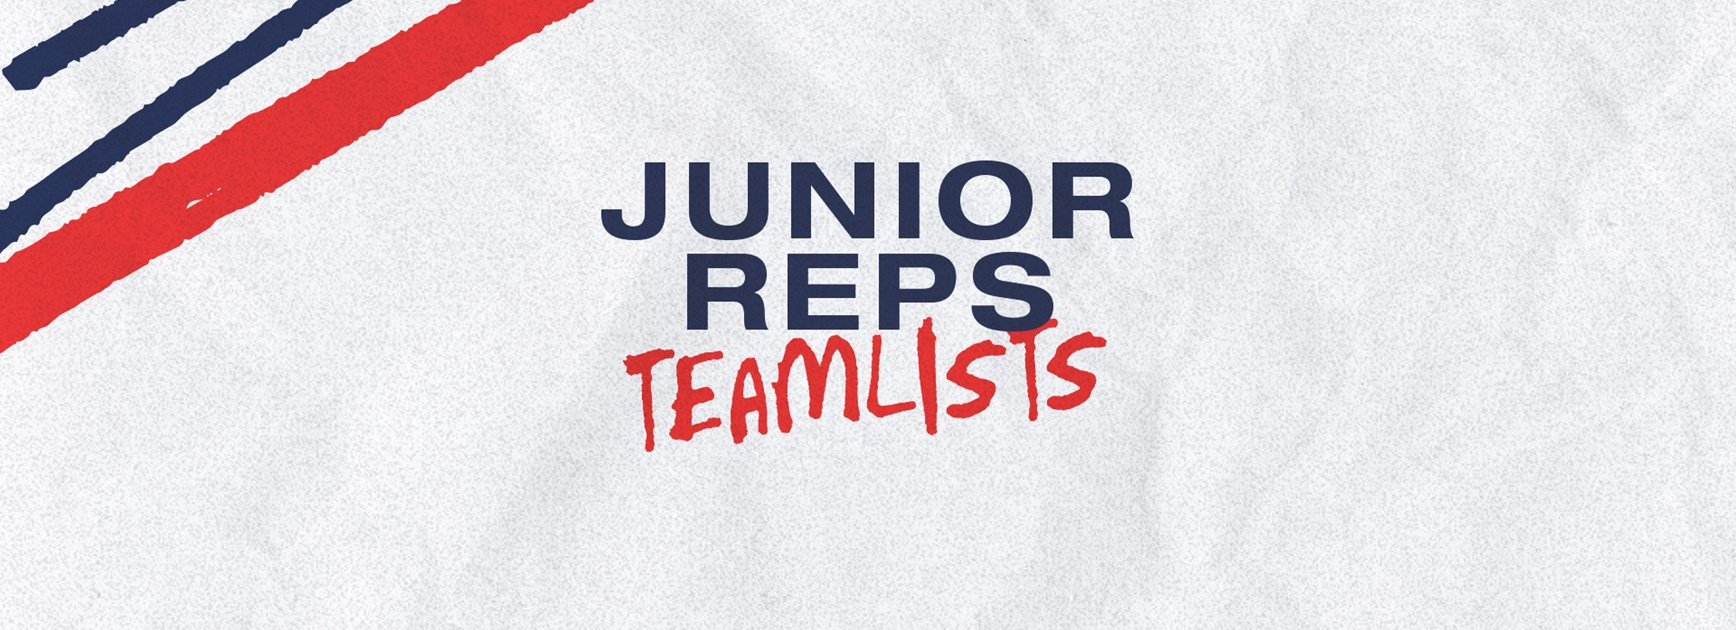 Junior Representative Teamlists for Round 4 Announced